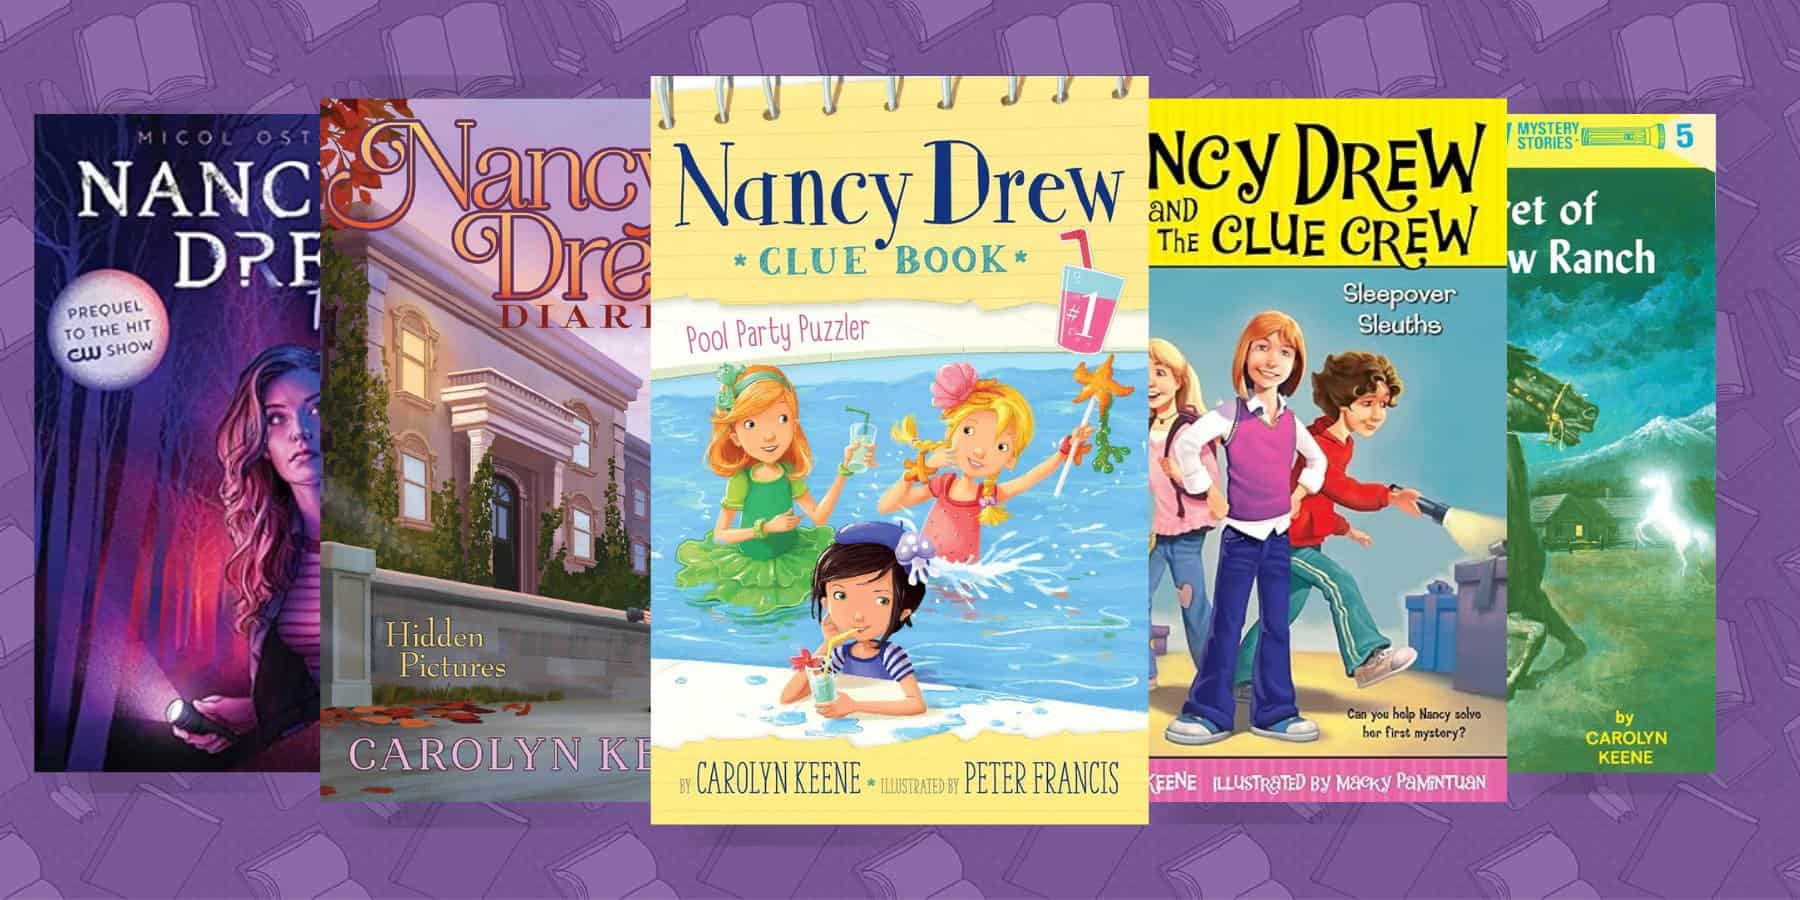 the best Nancy Drew books for kids